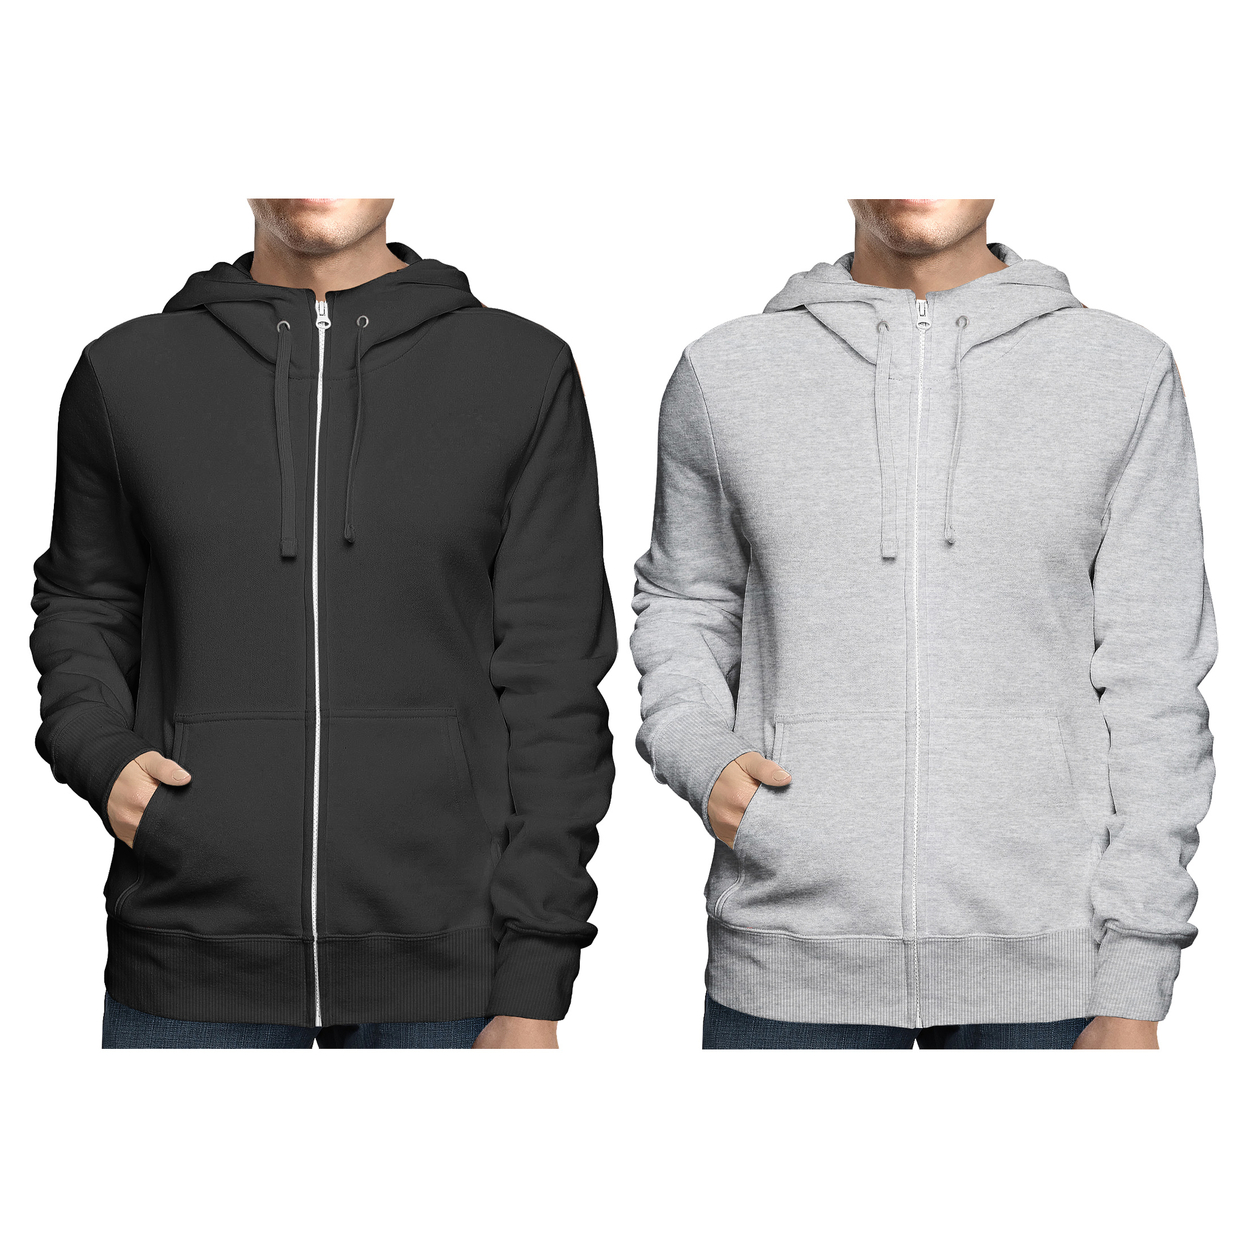 2-Pack: Men's Winter Warm Soft Full Zip-Up Fleece Lined Hoodie Sweatshirt - Black & Navy, Small